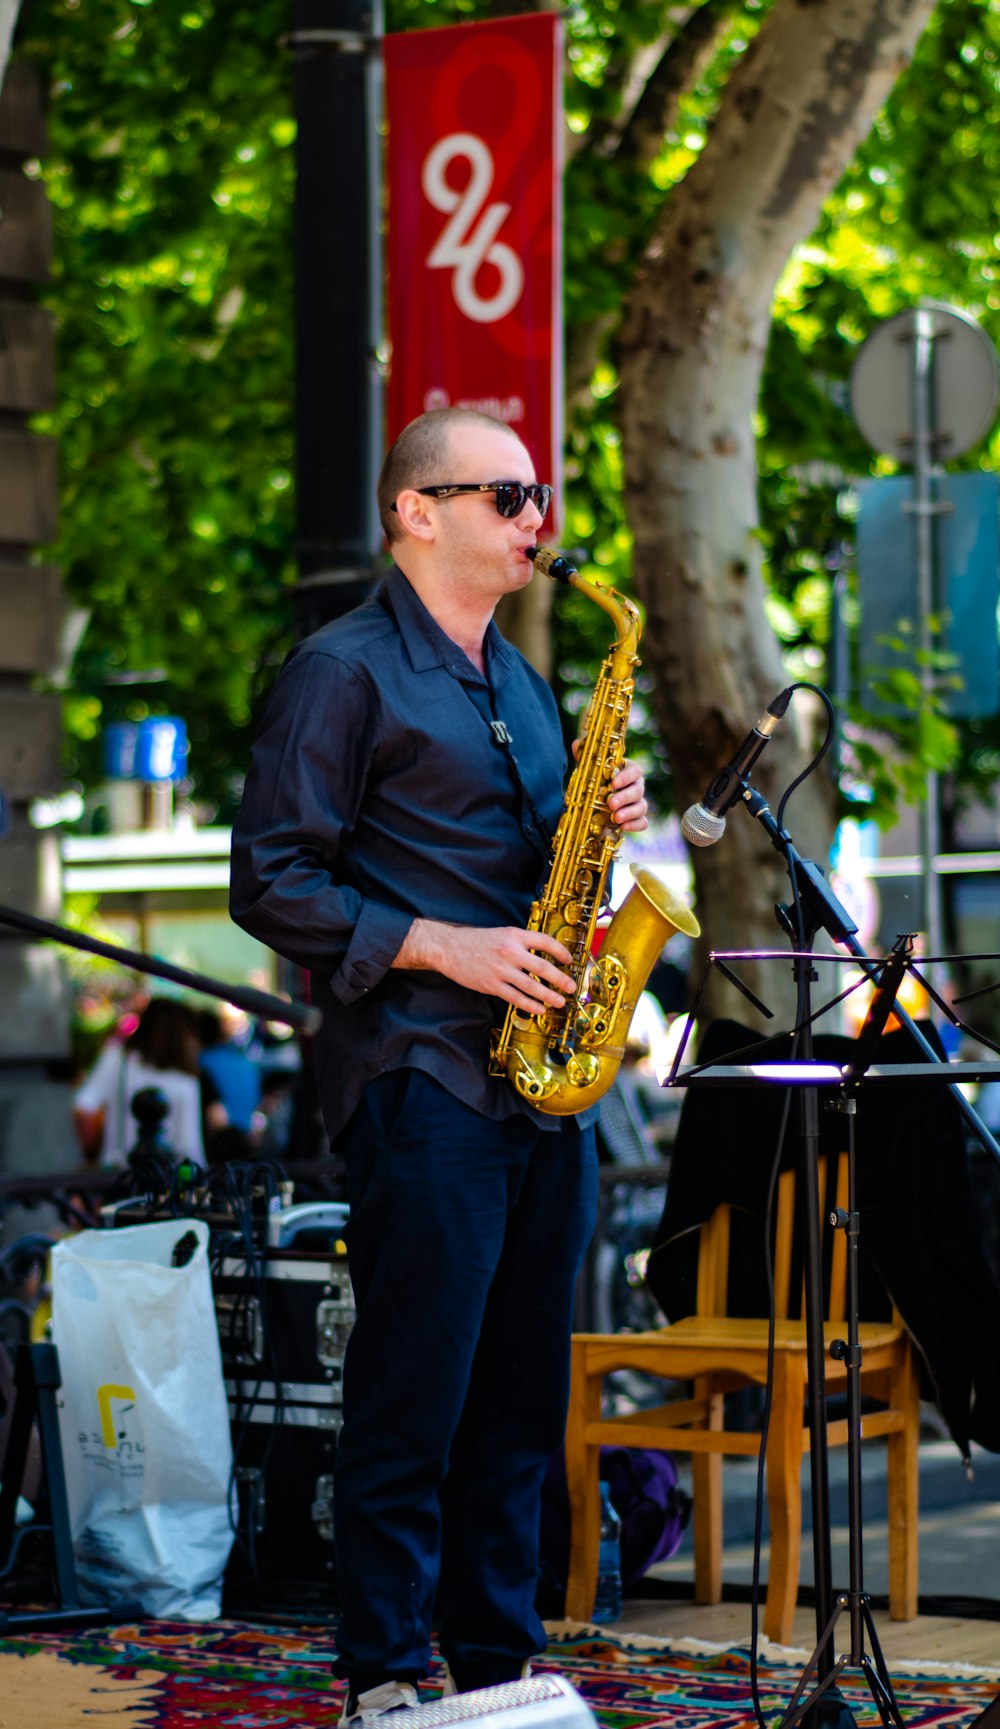 man playing saxophone near stage during daytime